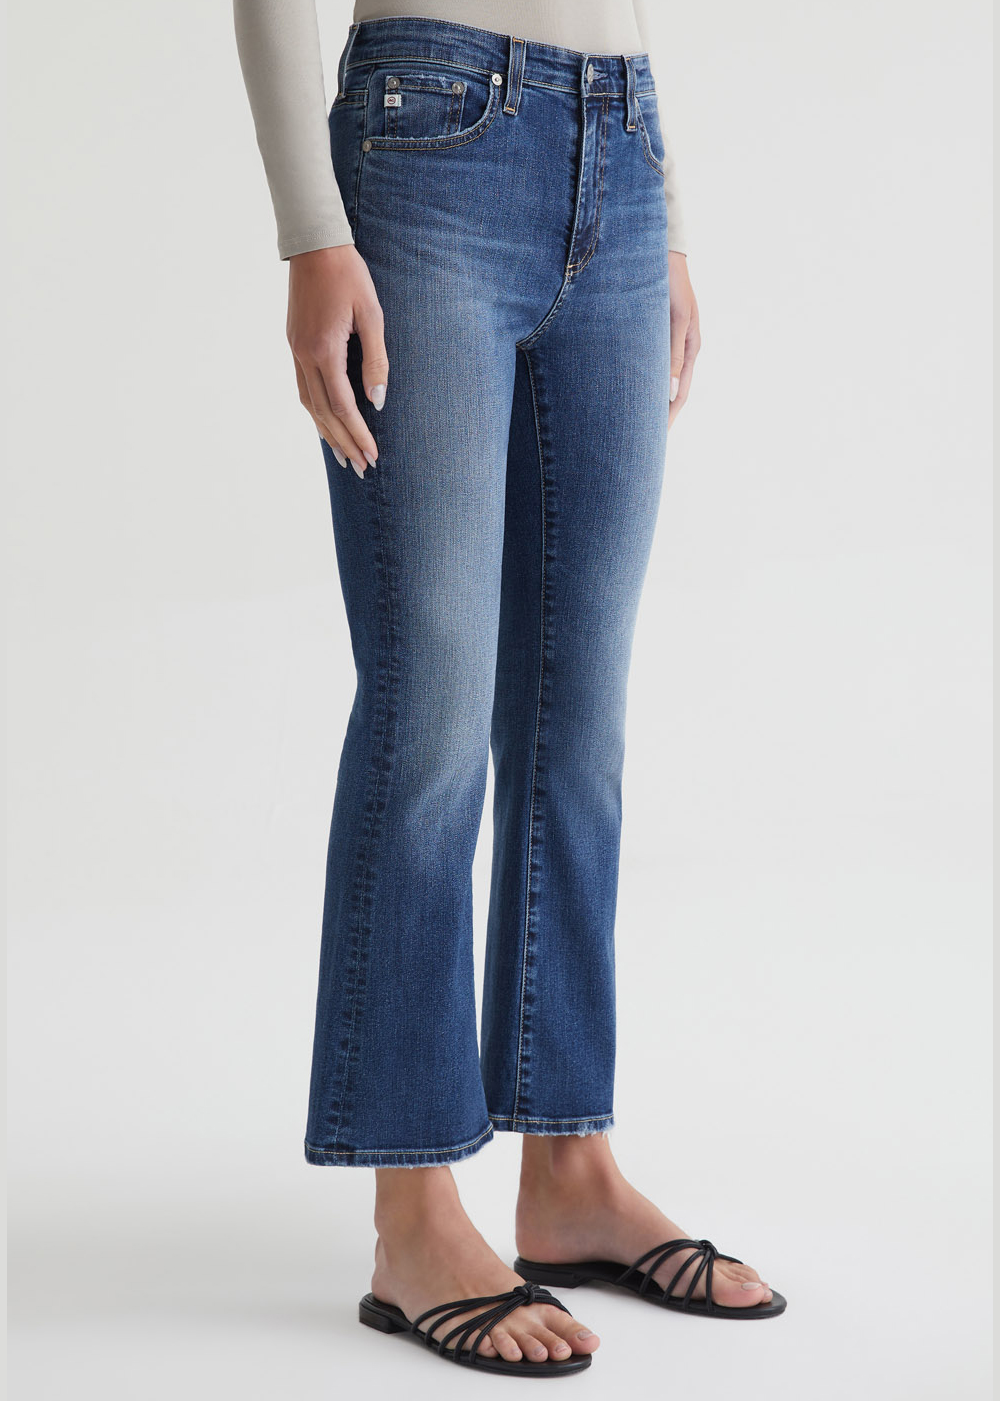 Farrah High Rise Boot Crop Jean - AG Jeans - Danali - JRN1B83VN